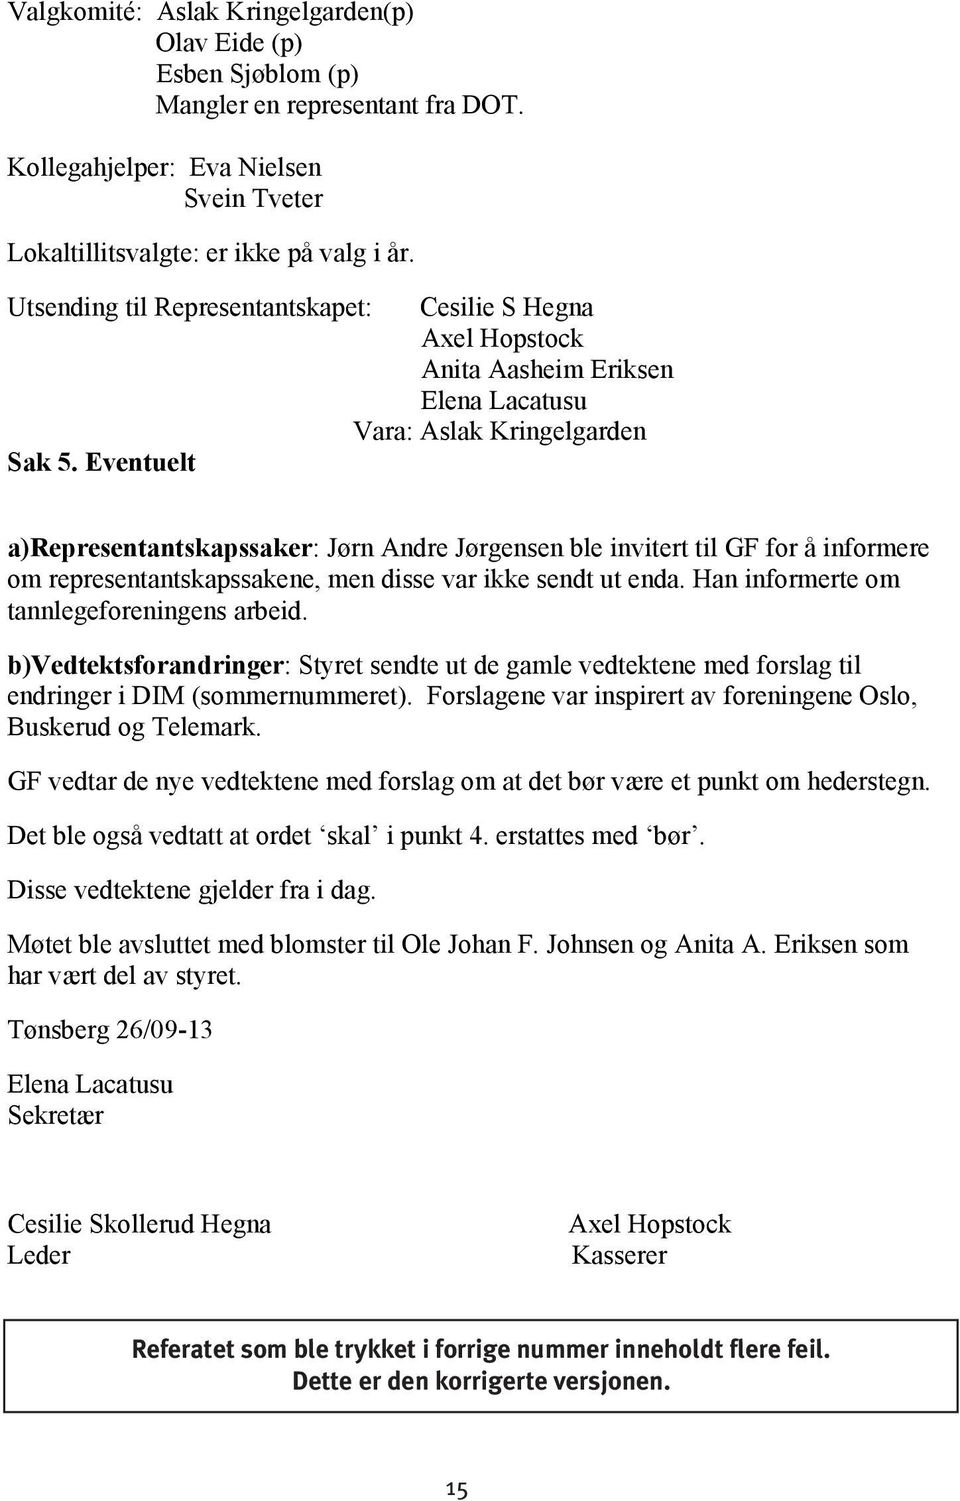 Eventuelt a)representantskapssaker: Jørn Andre Jørgensen ble invitert til GF for å informere om representantskapssakene, men disse var ikke sendt ut enda. Han informerte om tannlegeforeningens arbeid.